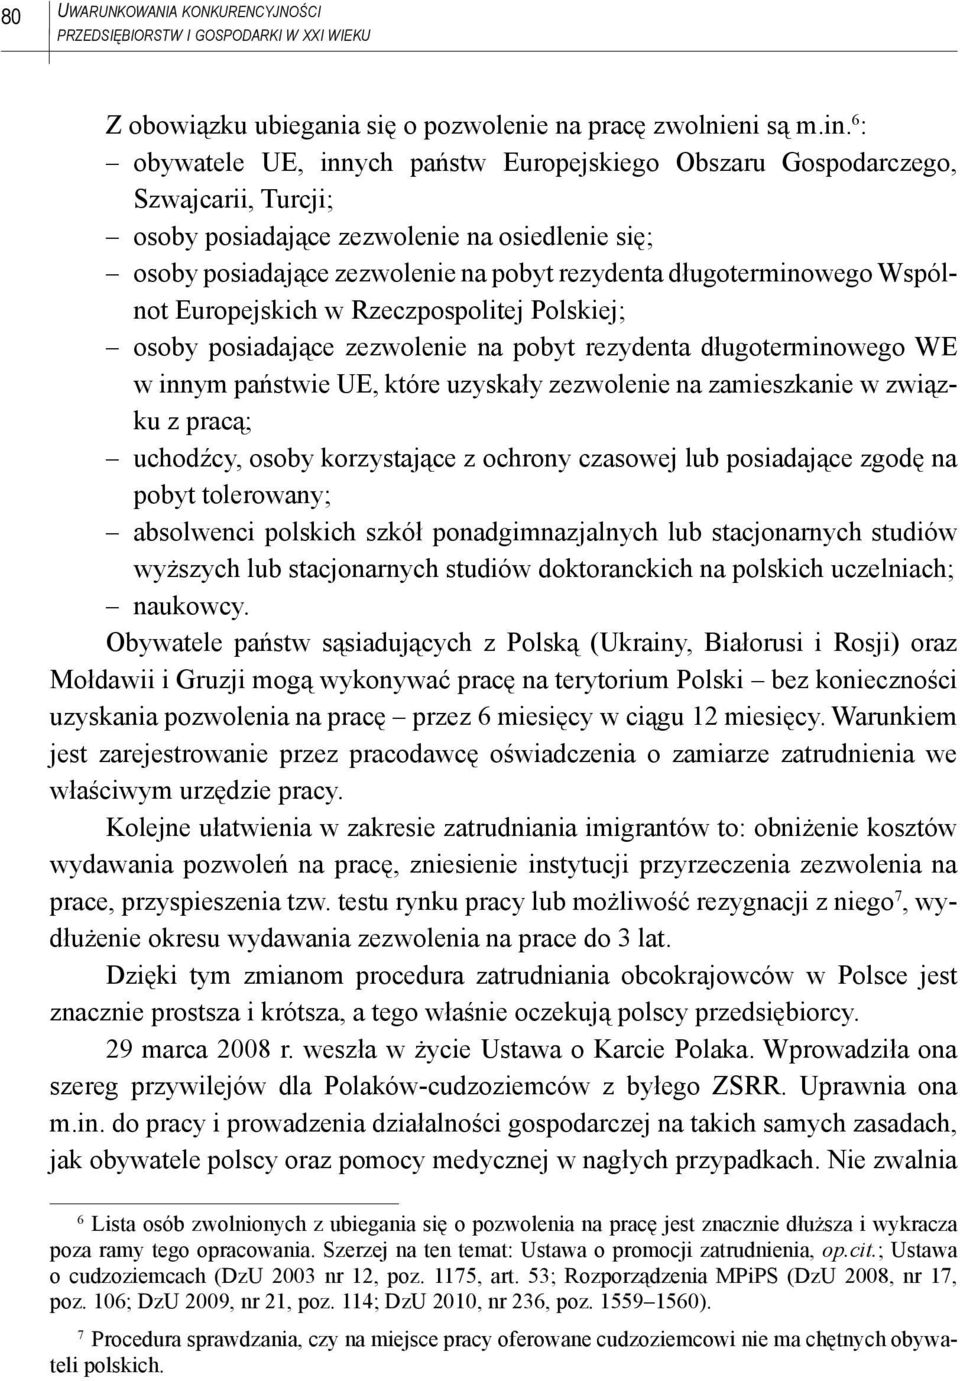 długoterminowego Wspólnot Europejskich w Rzeczpospolitej Polskiej; osoby posiadające zezwolenie na pobyt rezydenta długoterminowego WE w innym państwie UE, które uzyskały zezwolenie na zamieszkanie w